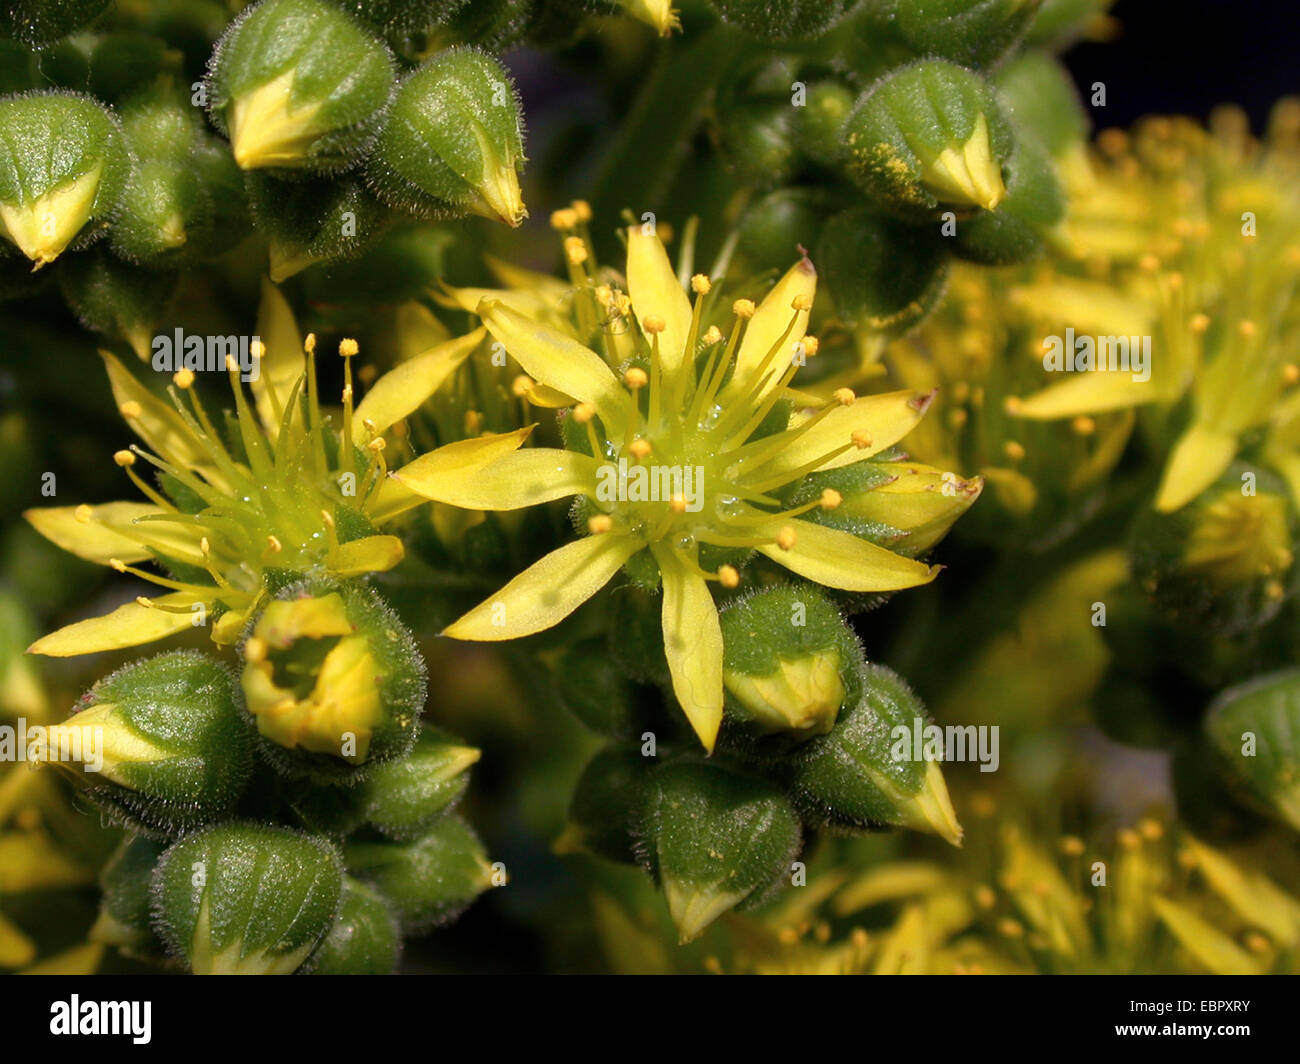 Aeonium (Aeonium cuneatum), blooming Stock Photo - Alamy